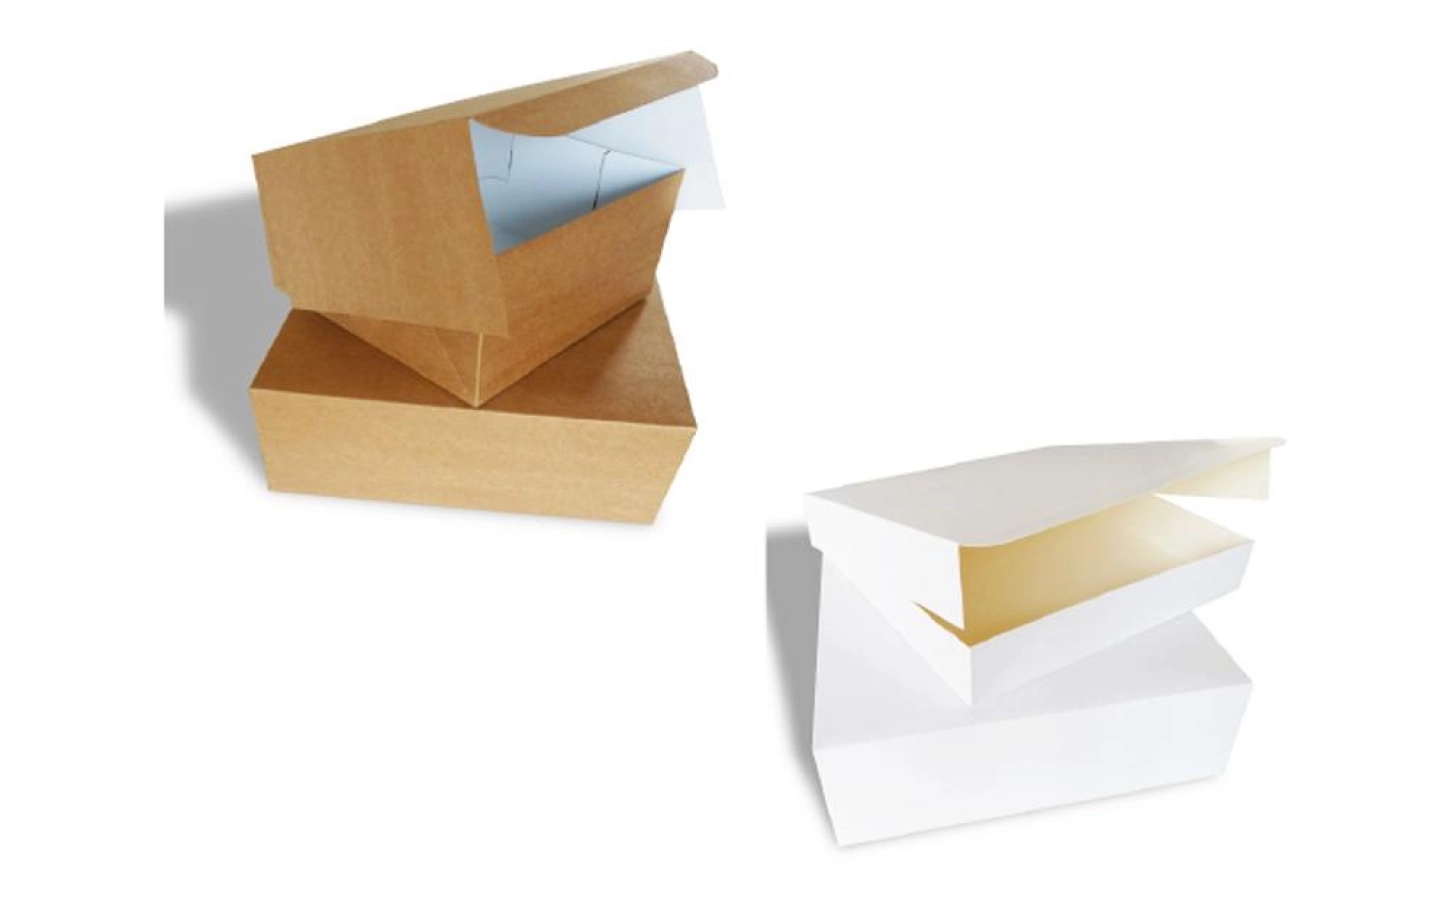 Ace Packaging vend d'emballages en carton.